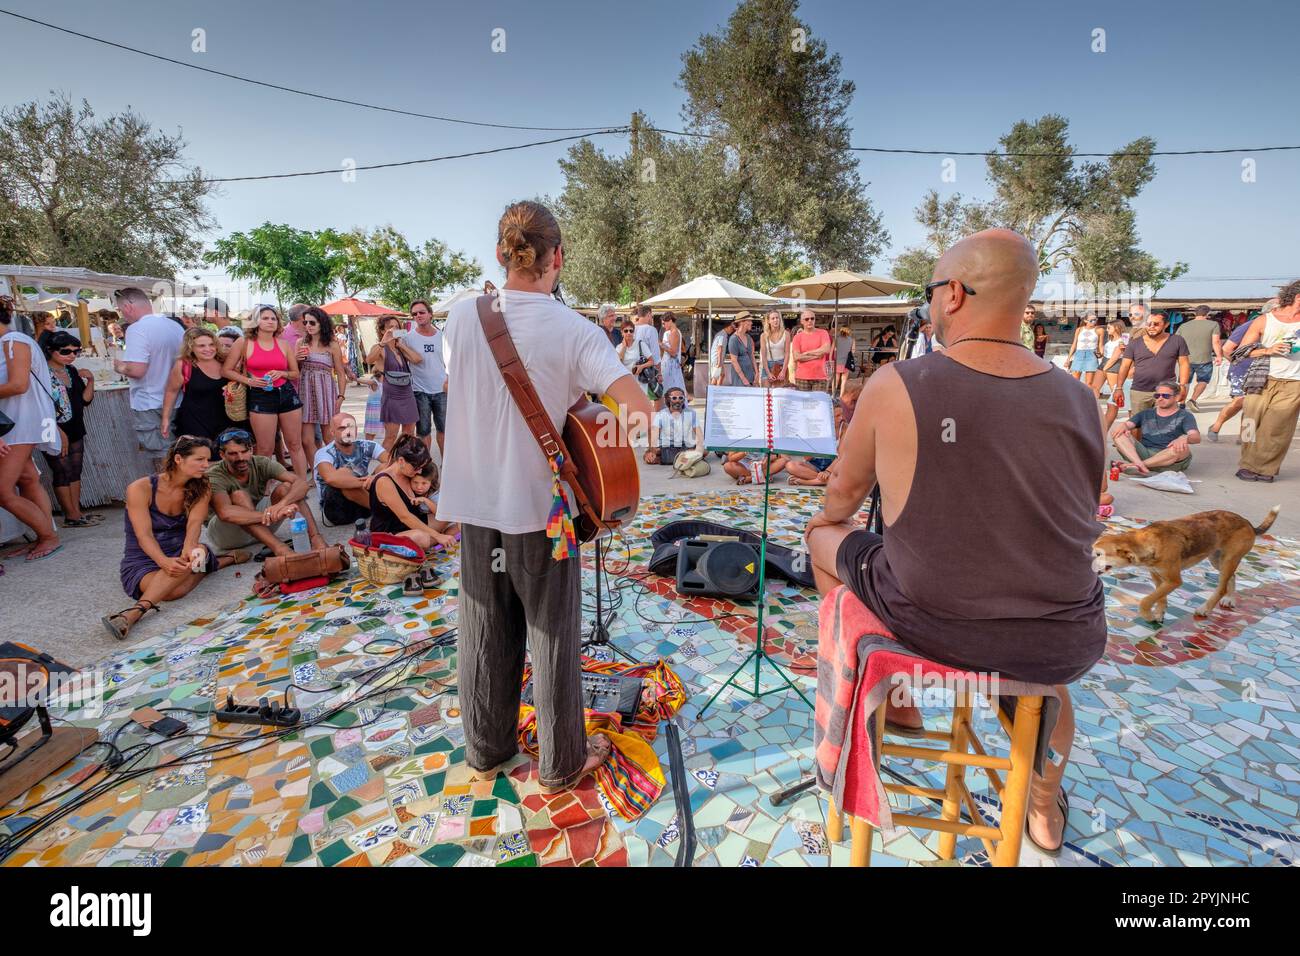 Mercadillo Hippie, Feria Artesal de La Mola, el Pilar de la Mola, Formentera, balearic islands, Spain Stock Photo